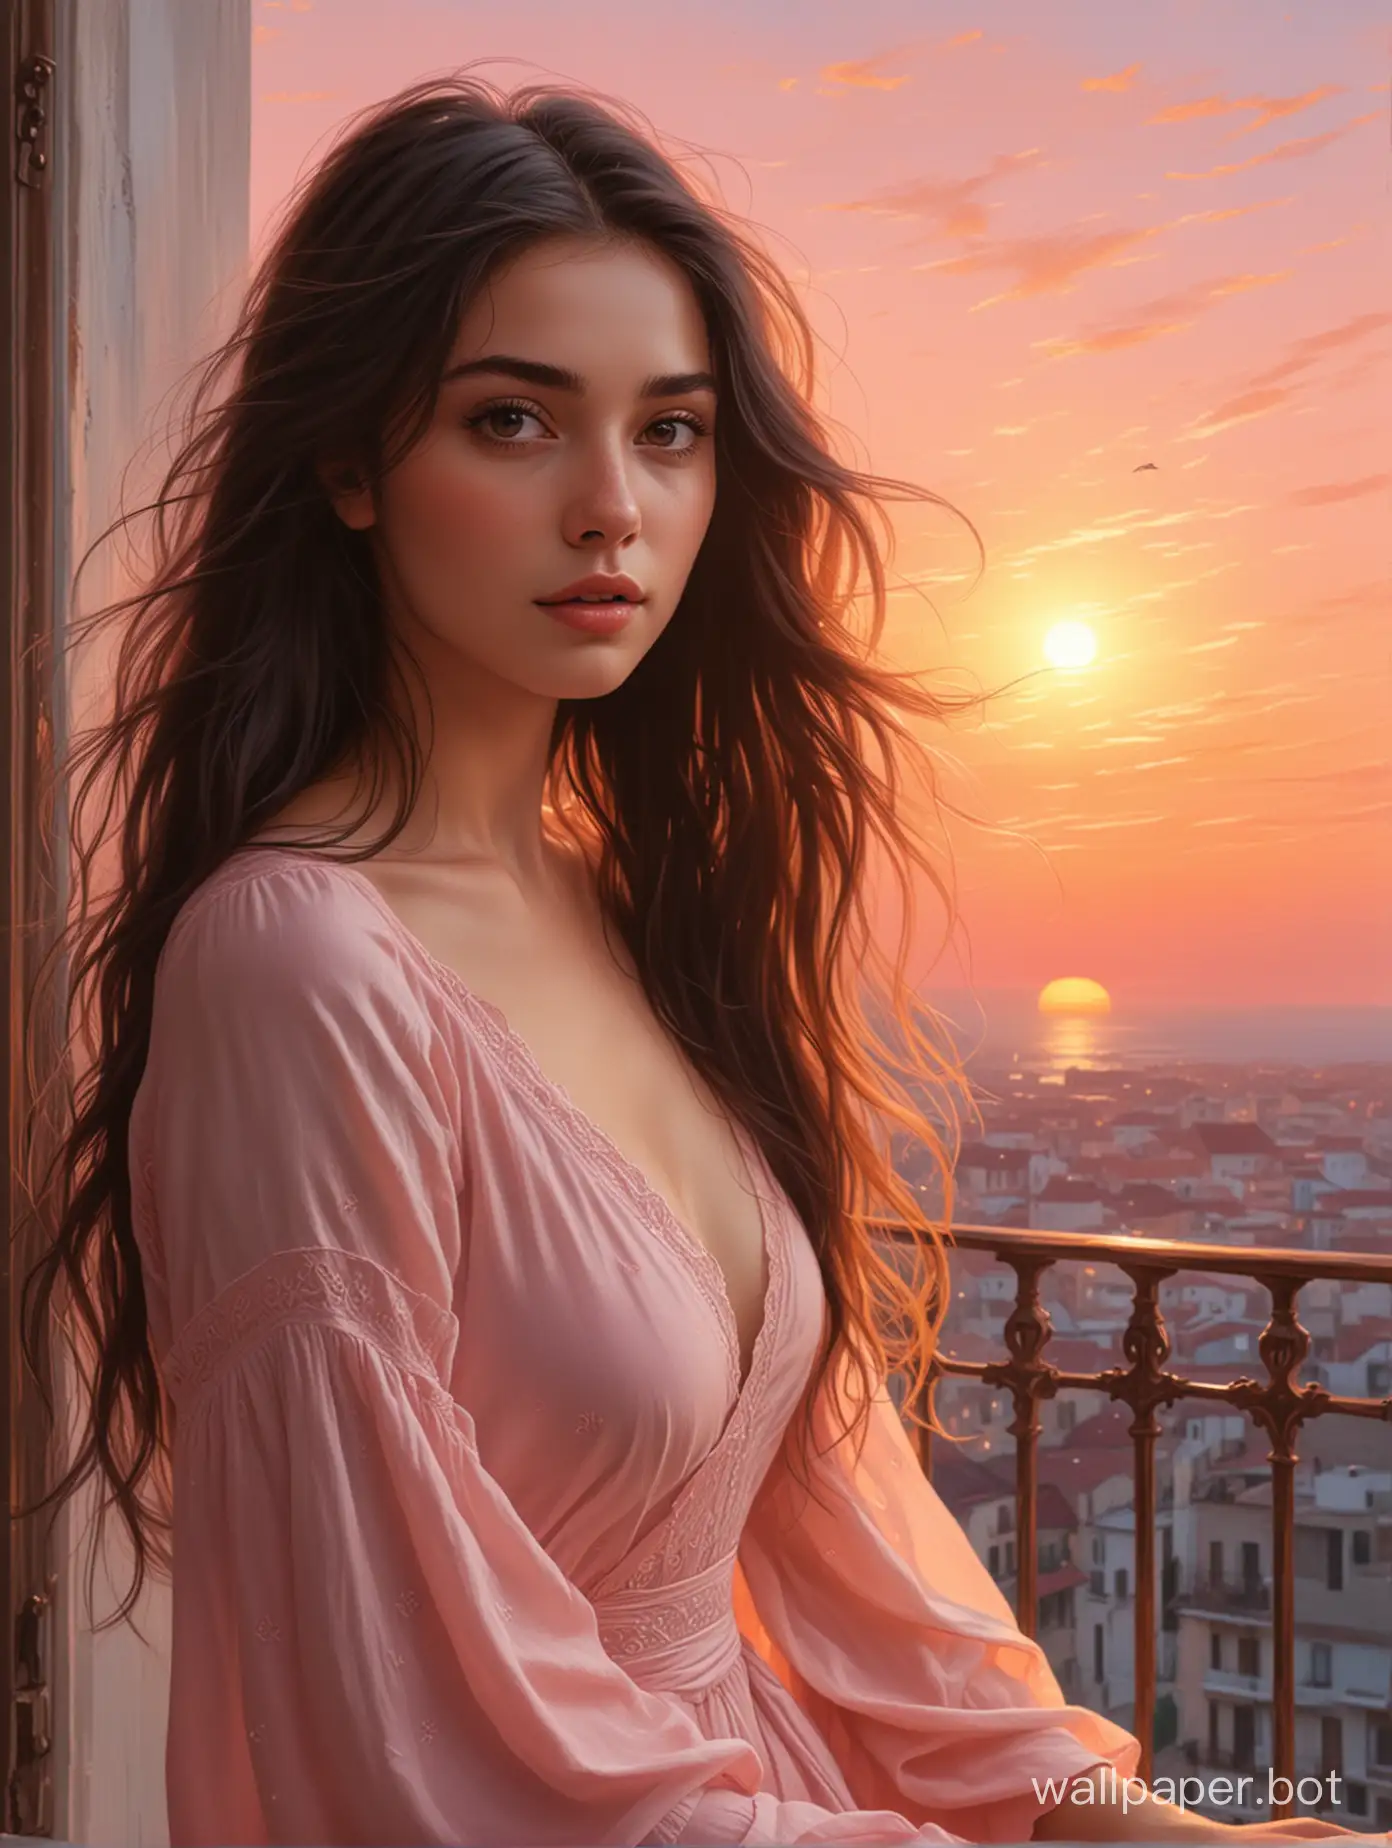 На обложке книги изображена прекрасная молодая женщина с темными длинными волосами, которые легко колышутся на ветру. Она стоит на балконе, утопая в первых лучах рассвета. В ее глазах отражается нежность и загадочность, а взгляд наполнен тайной и мечтами. Фон обложки темный, только на горизонте виднеется нежное розовое небо, окрашенное в цвета восходящего солнца. Этот образ символизирует начало нового дня и новых возможностей для главной героини, подарившейся в этот момент волшебной атмосфере рассвета.